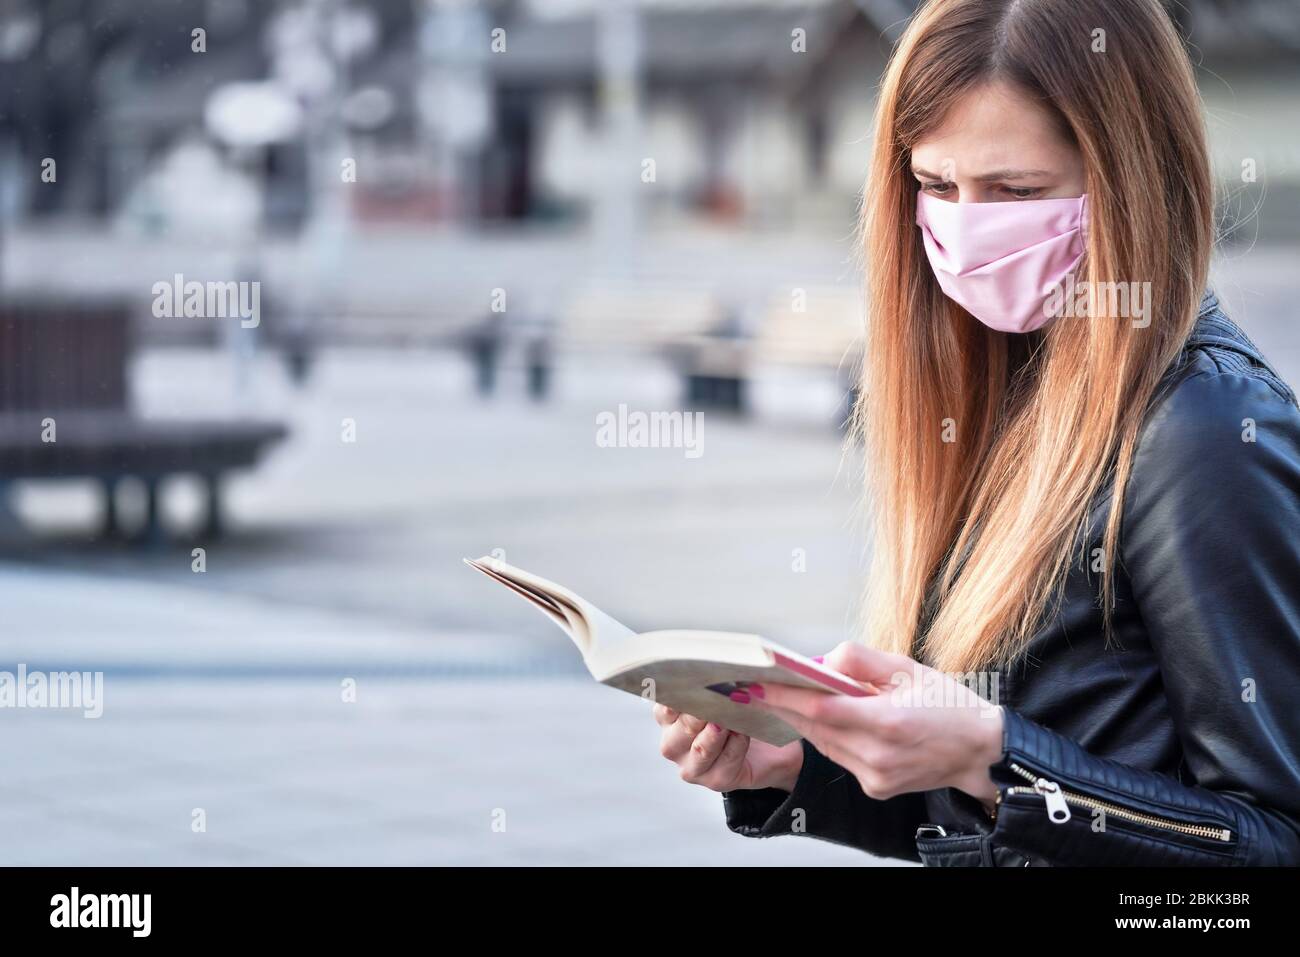 Junge Frau mit Hand gemacht rosa Gesicht Nase Mund Maske sitzen allein, Buch lesen, leere Stadtplatz hinter ihr. Kann während Coronavirus-Covid19 verwendet werden Stockfoto